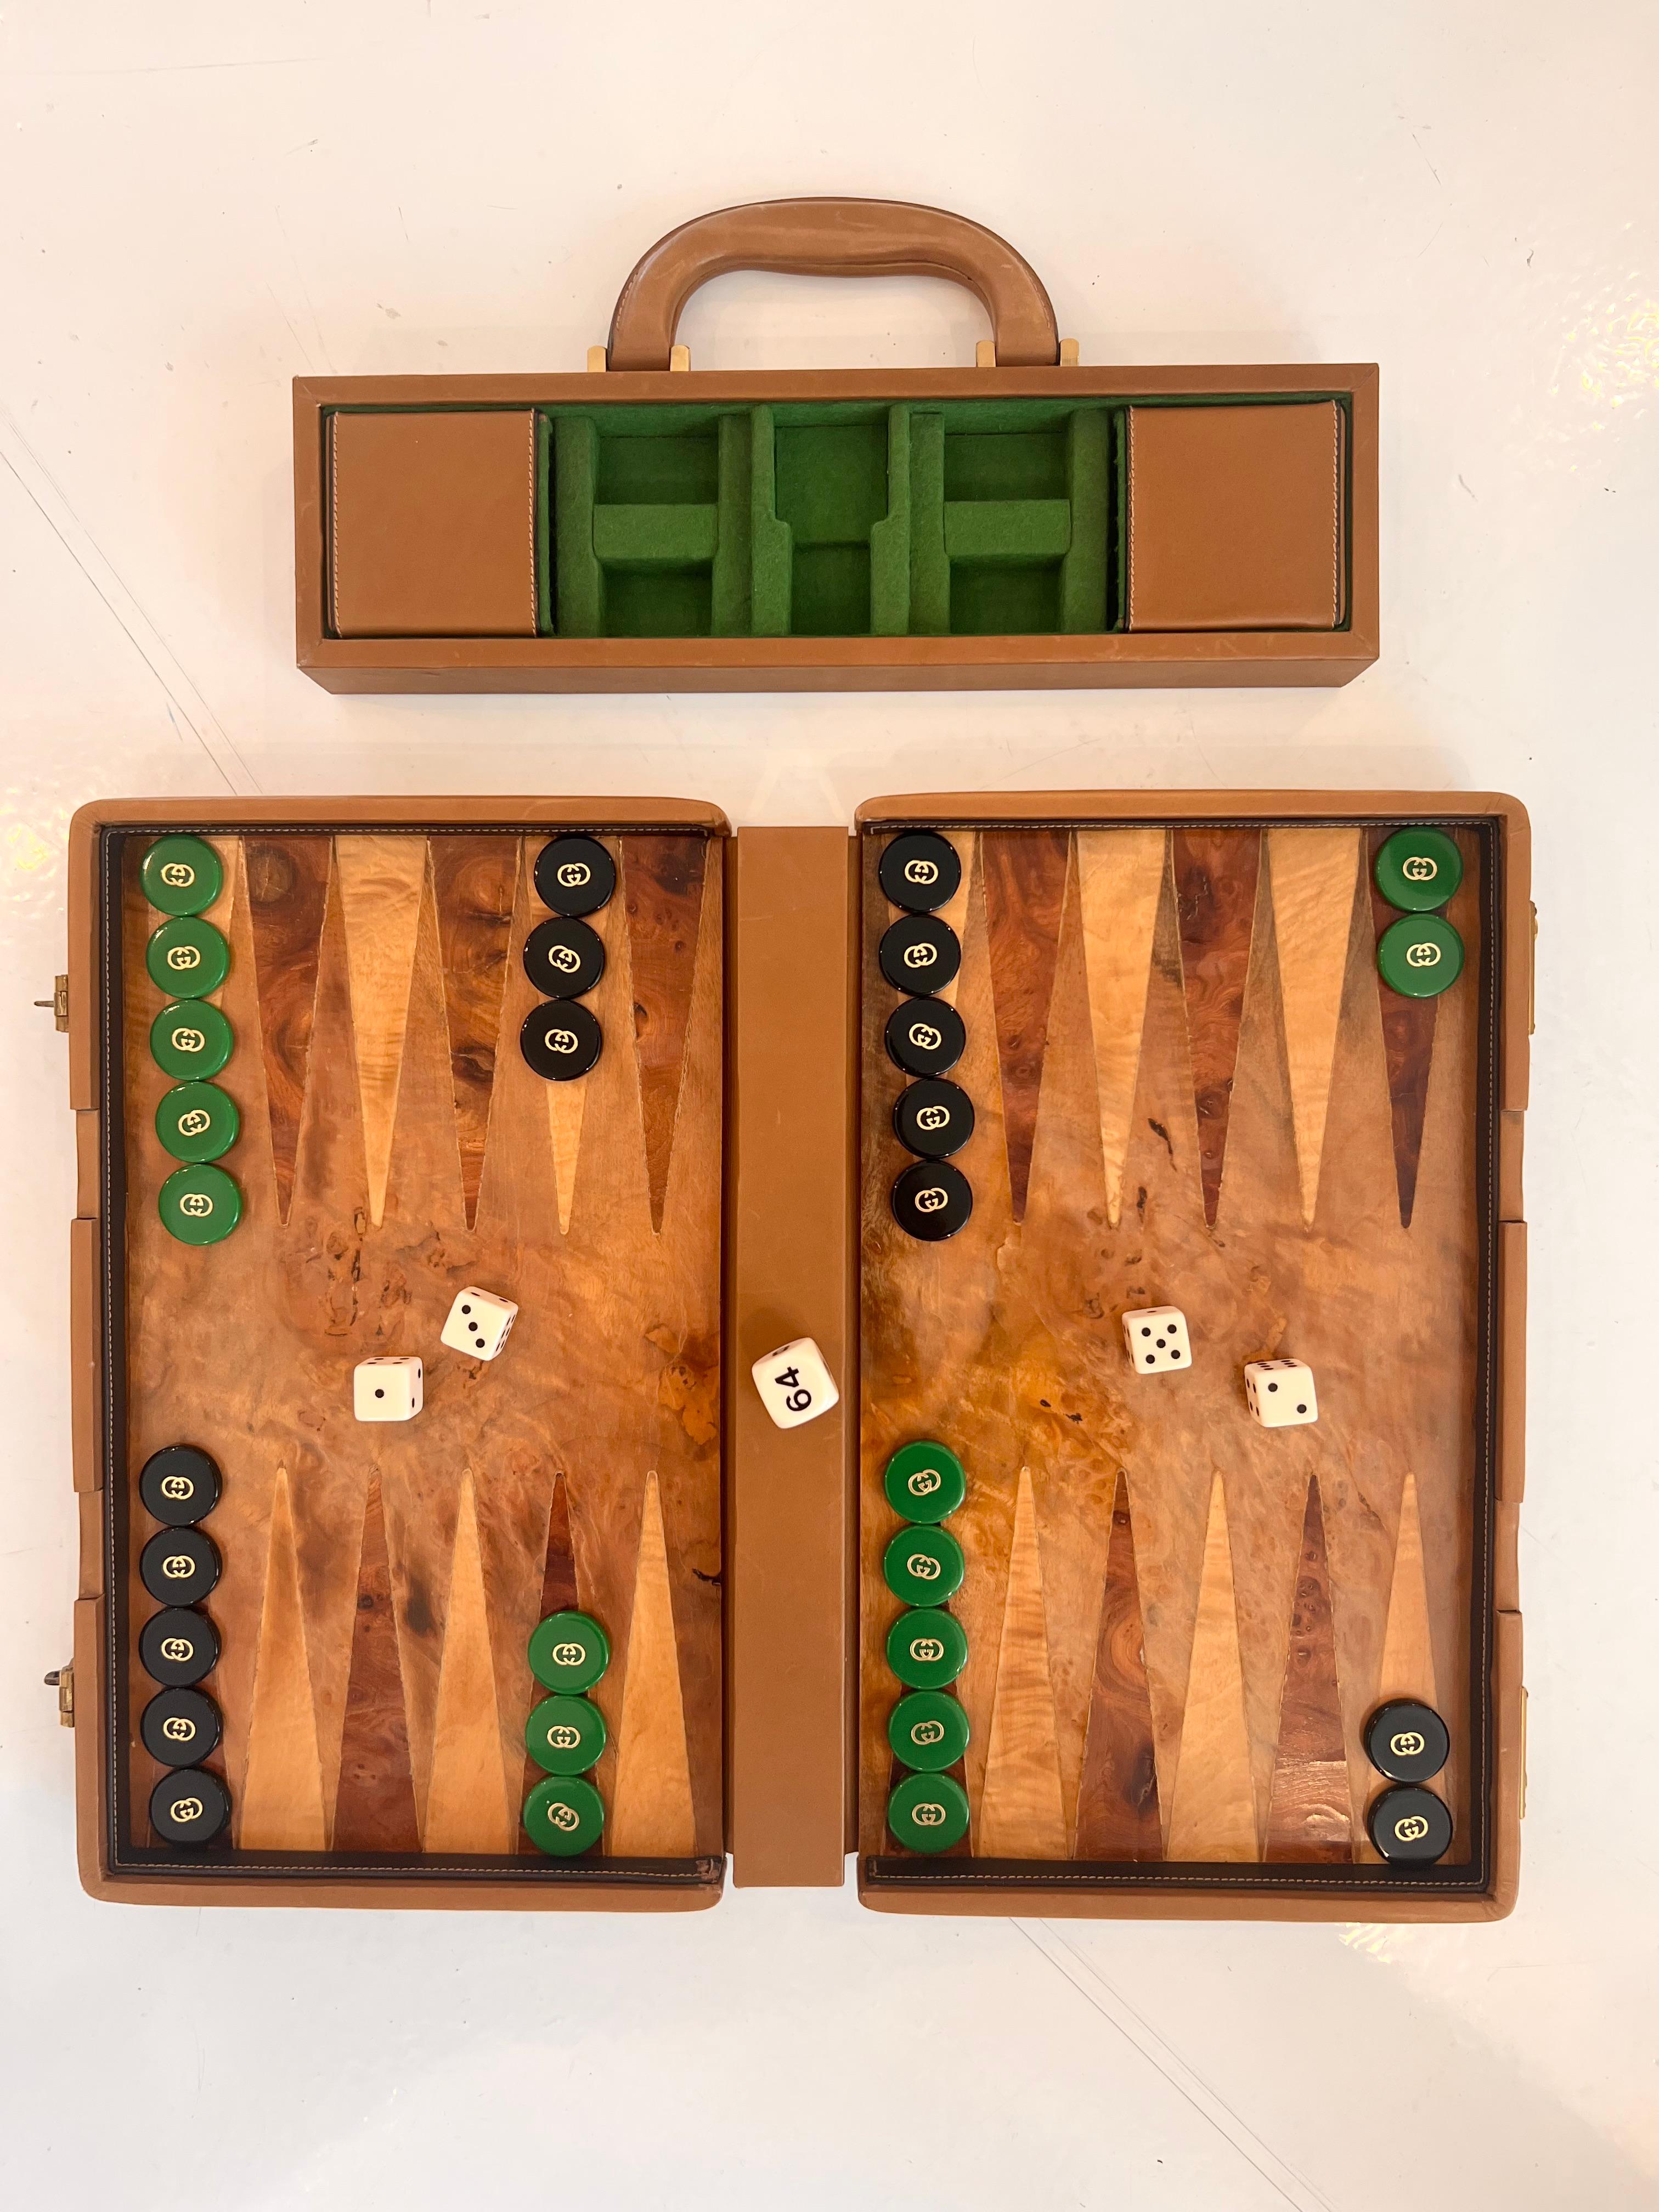 Vintage tragbare Gucci Backgammon Fall / Spiel. Tan Leder trimmen mit Burl Holz auf Vorder-und Rückseite des Gehäuses und Burl Holz Spielbrett / Spielfläche. 15 grüne und 15 schwarze Backgammon Pips alle vorhanden und in einwandfreiem Zustand. Alle